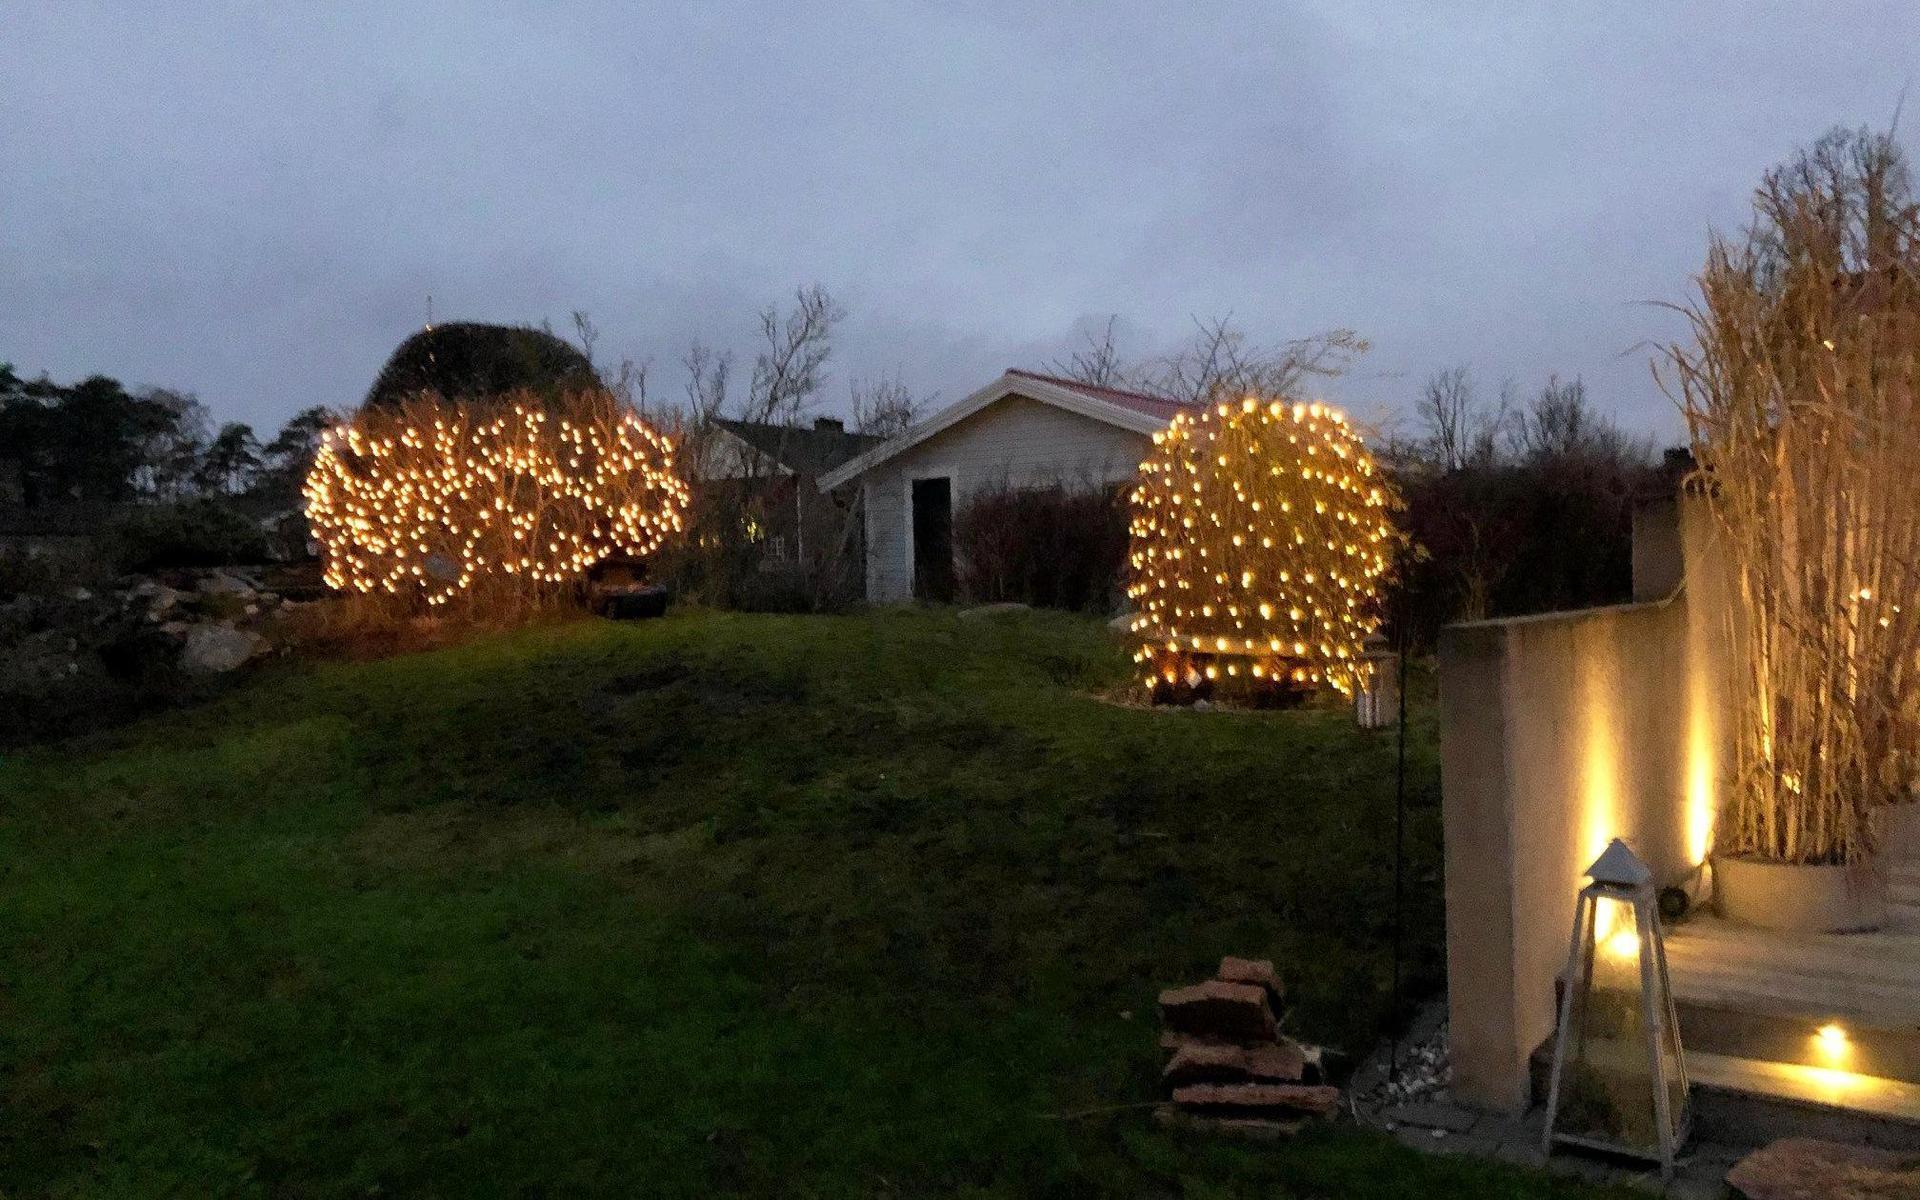 På baksidan av huset lyser buskarna upp med ljus.